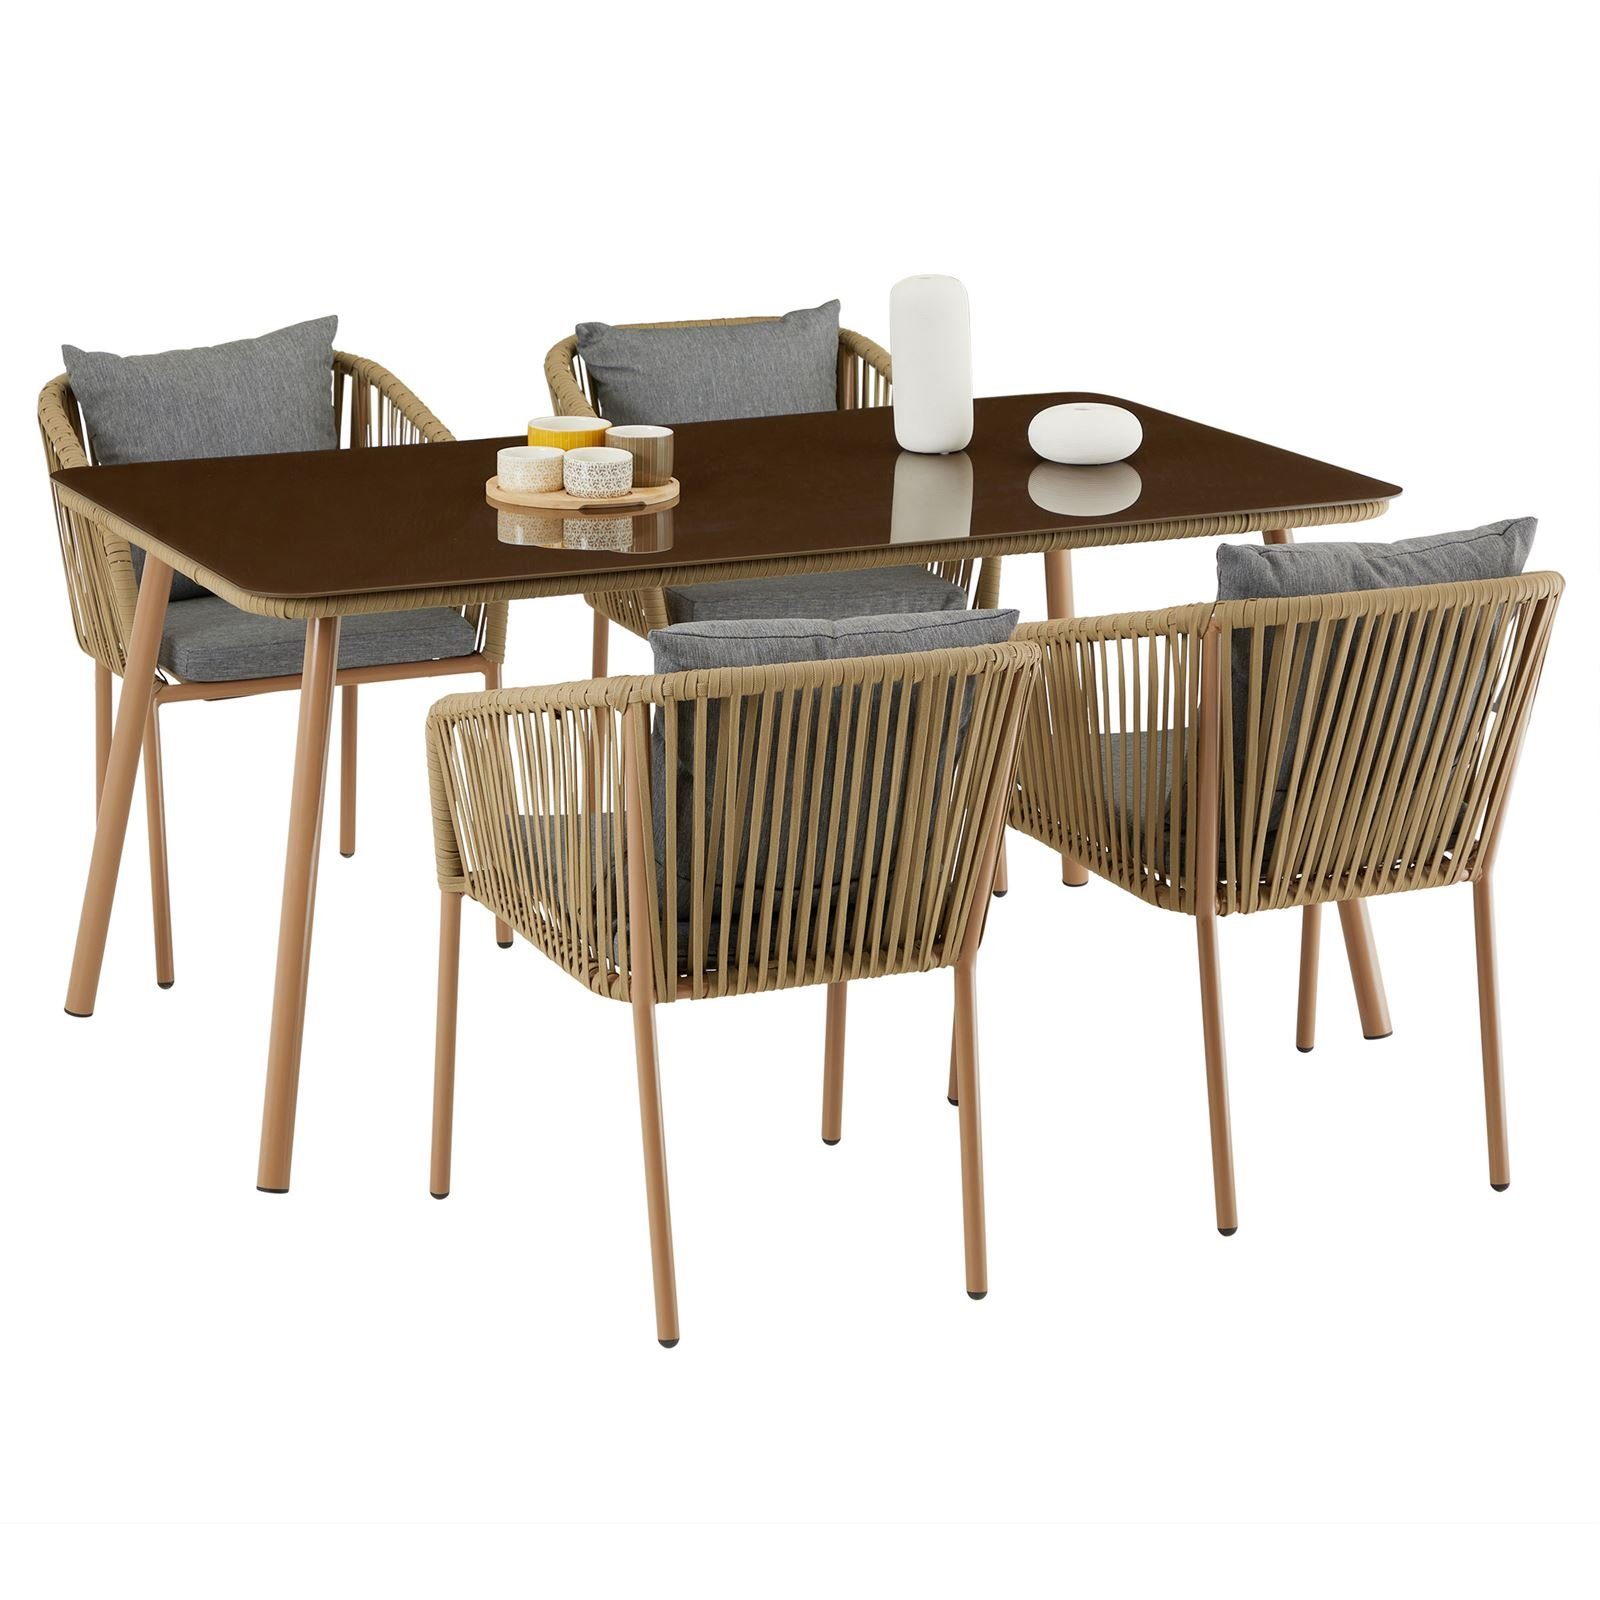 CARO-Möbel Gartenlounge-Set CAPO, Gartenmöbel Set beige/grau 1 Esstisch und 4 Stühle aus Alu mit Seilbes